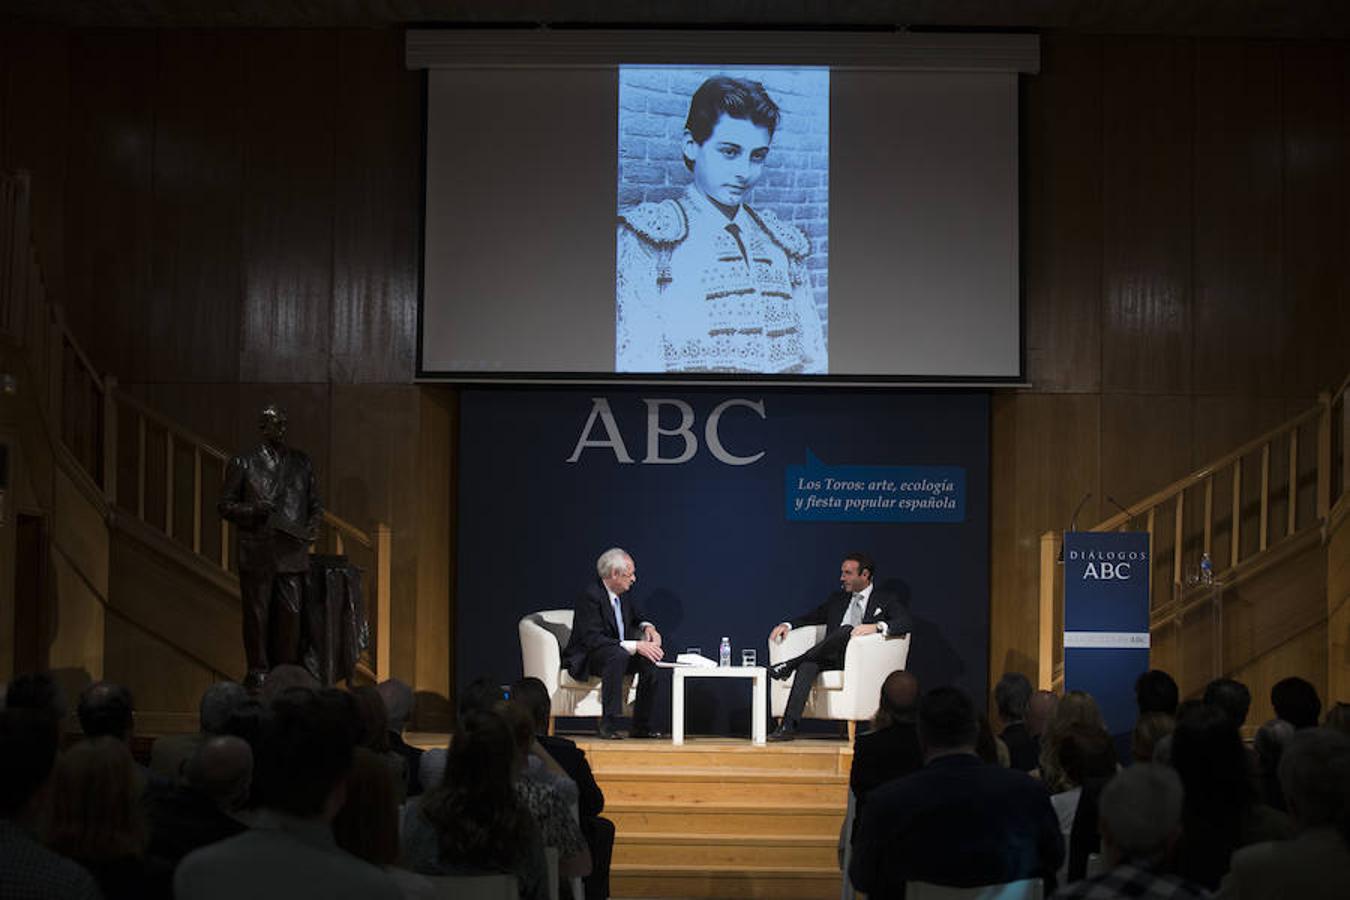 El encuentro entre Enrique Ponce y el crítico taurino Andrés Amorós, en imágenes  